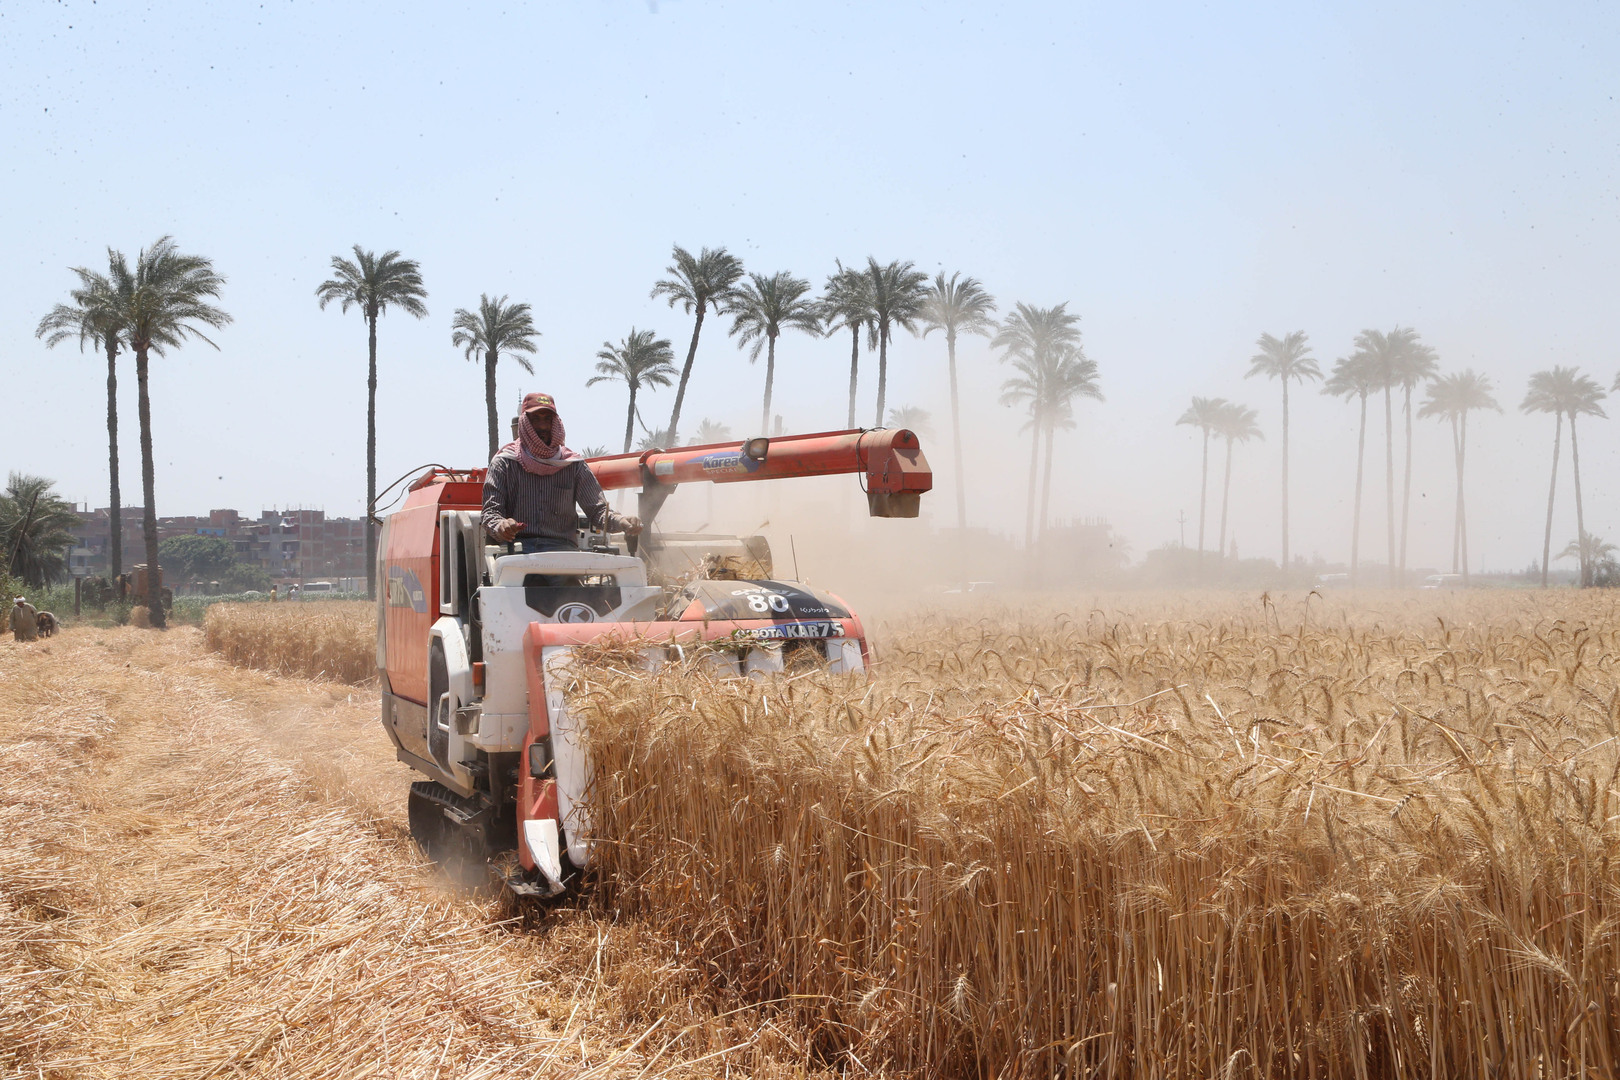 سوق القمح العالمية.. أكبر مصدري ومشتري القمح بينهم 3 دول عربية